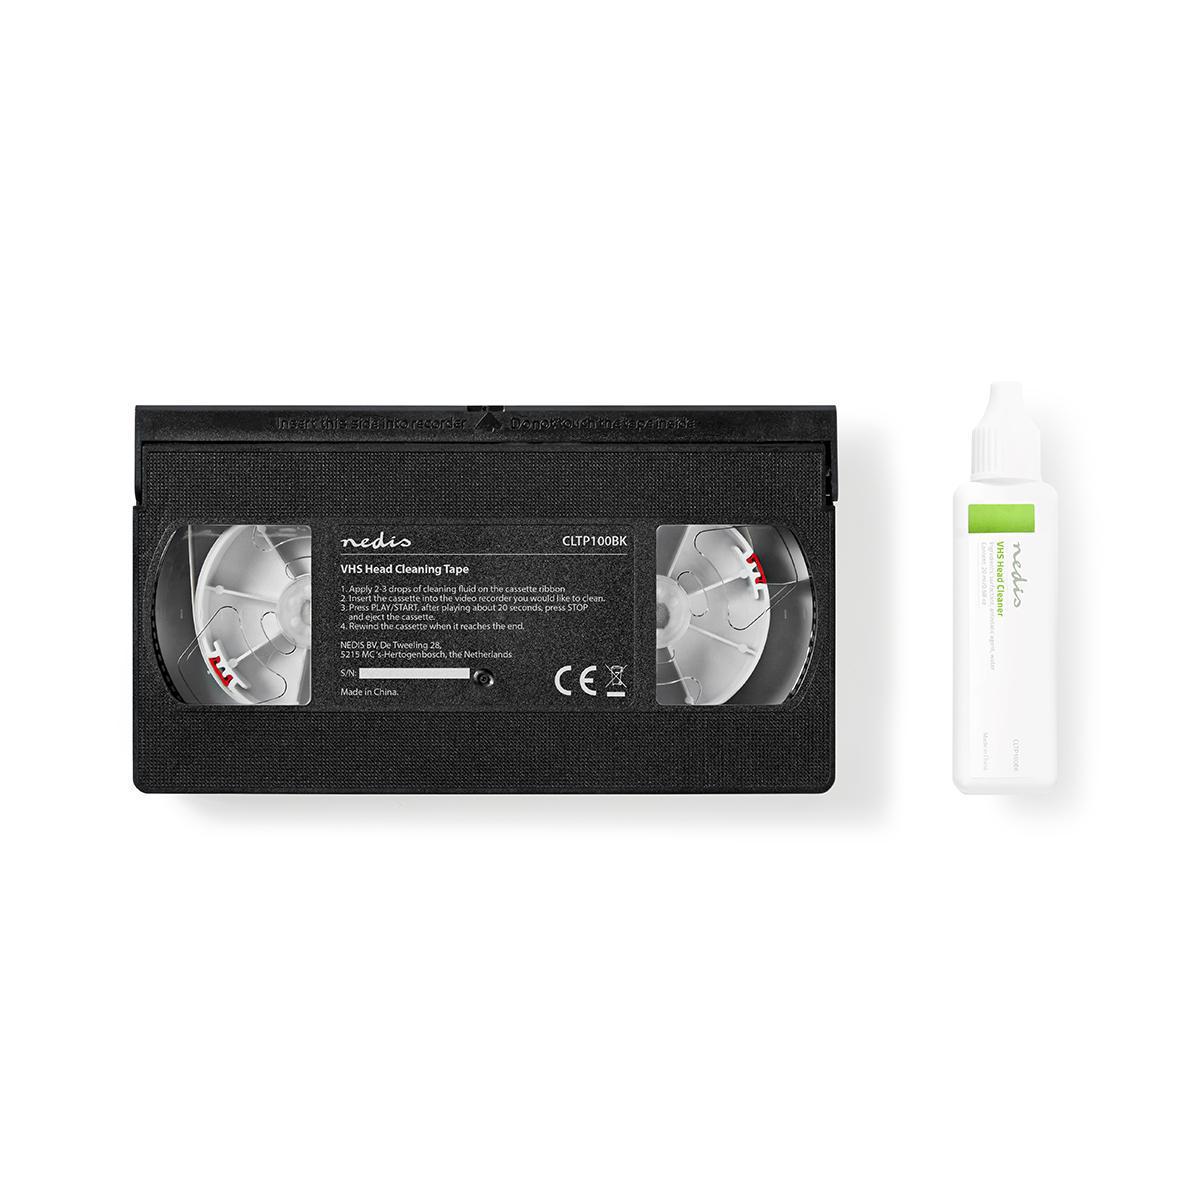 Cassette de nettoyage pour têtes de lecture vhs / 20 ml